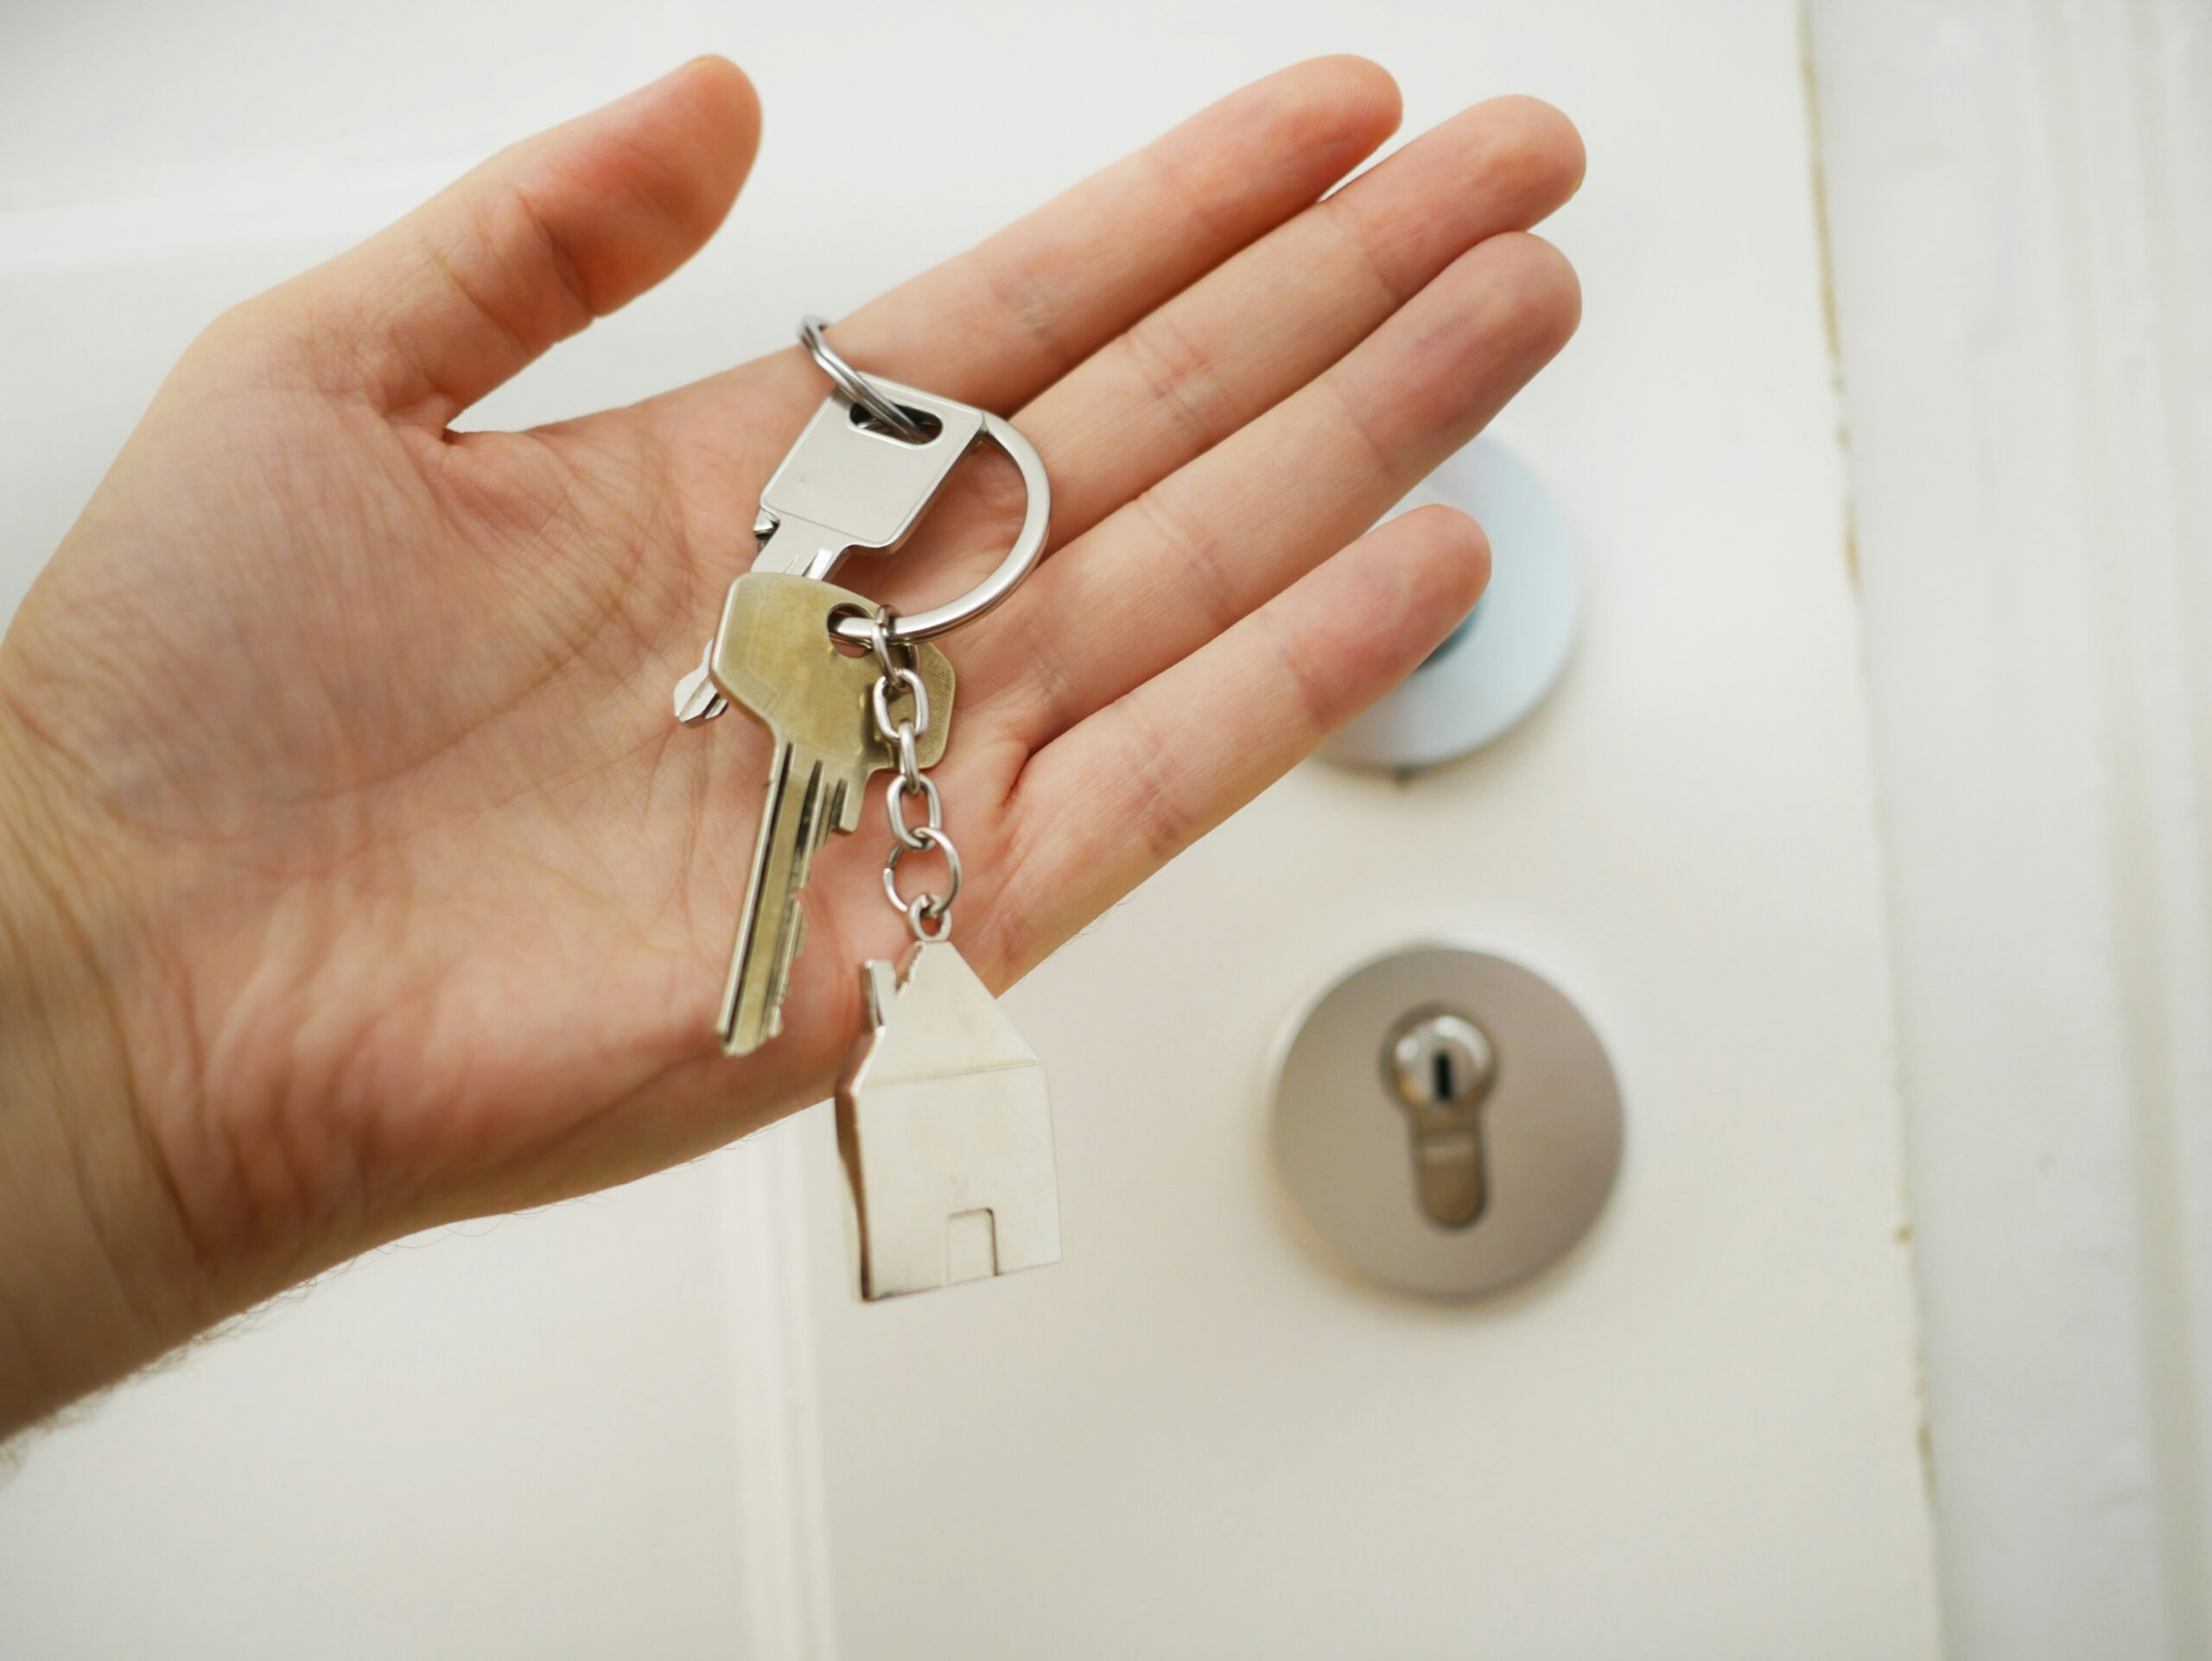 Schlüsselbund mit Hausanhänger vor Wohnungstür bei einer Wohnungsübergabe